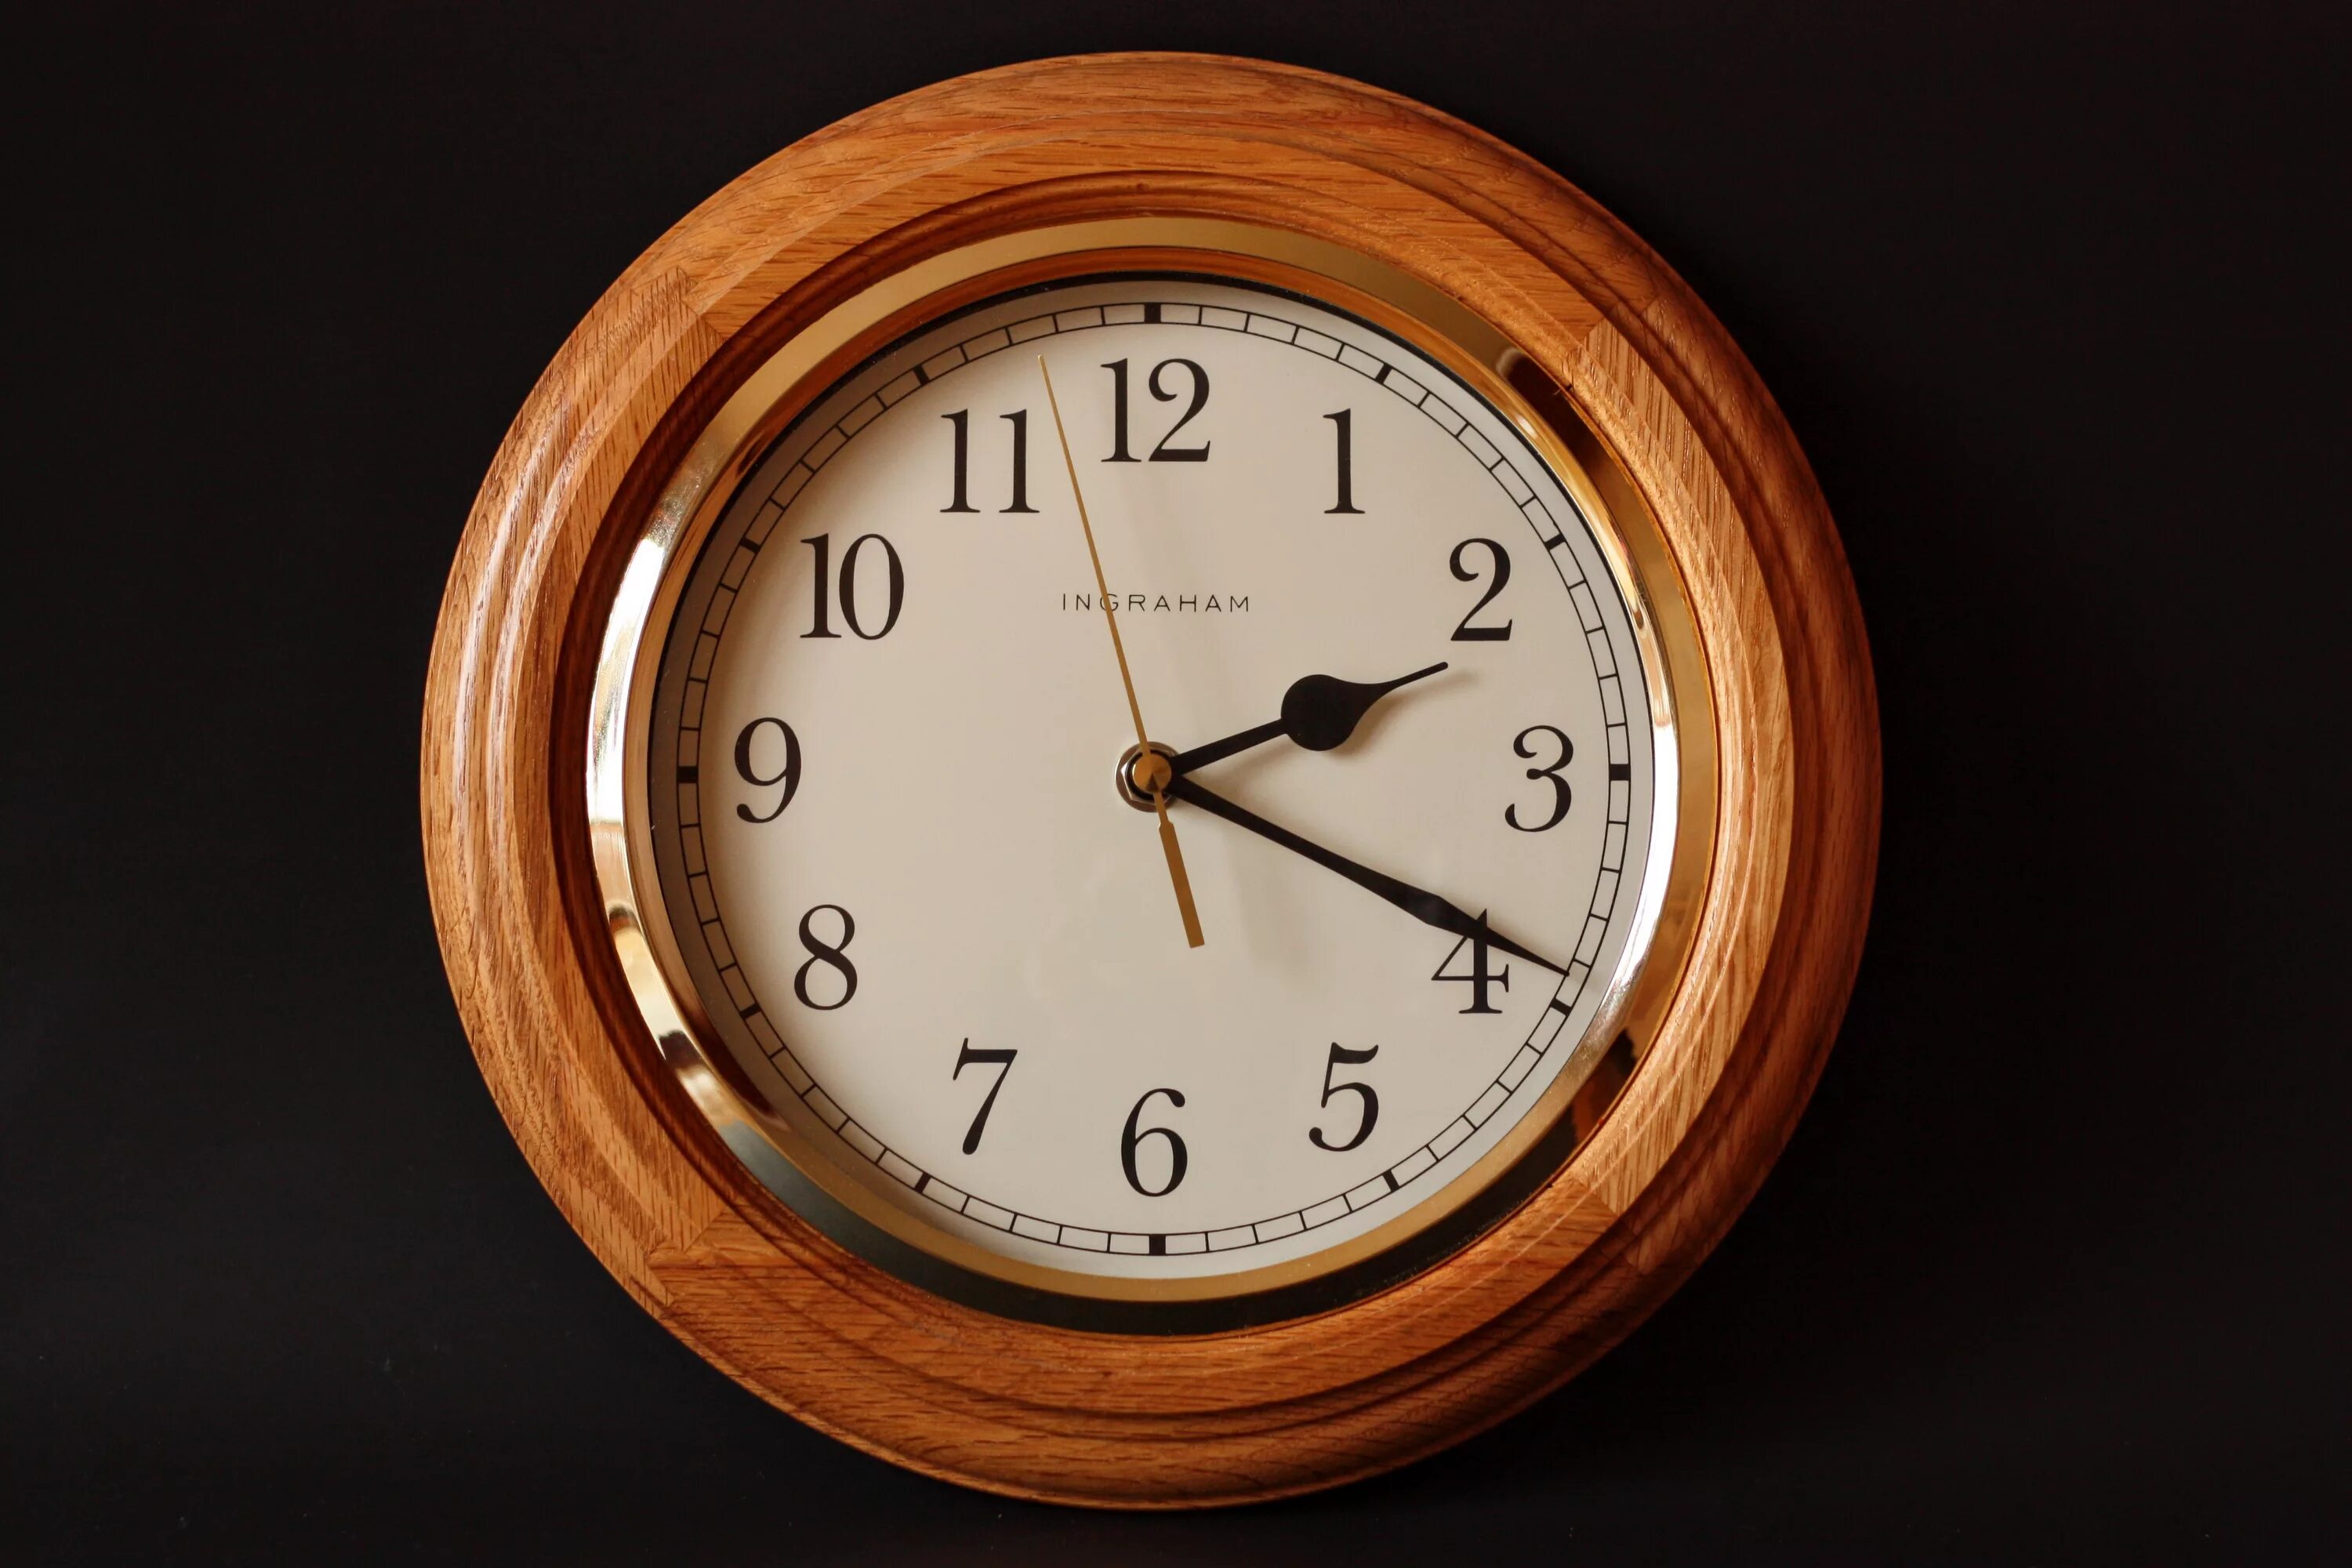 Westminster Chime часы Quartz. Часы механические настенные. Часы настенные деревянные. Часы классика. Время 14 58